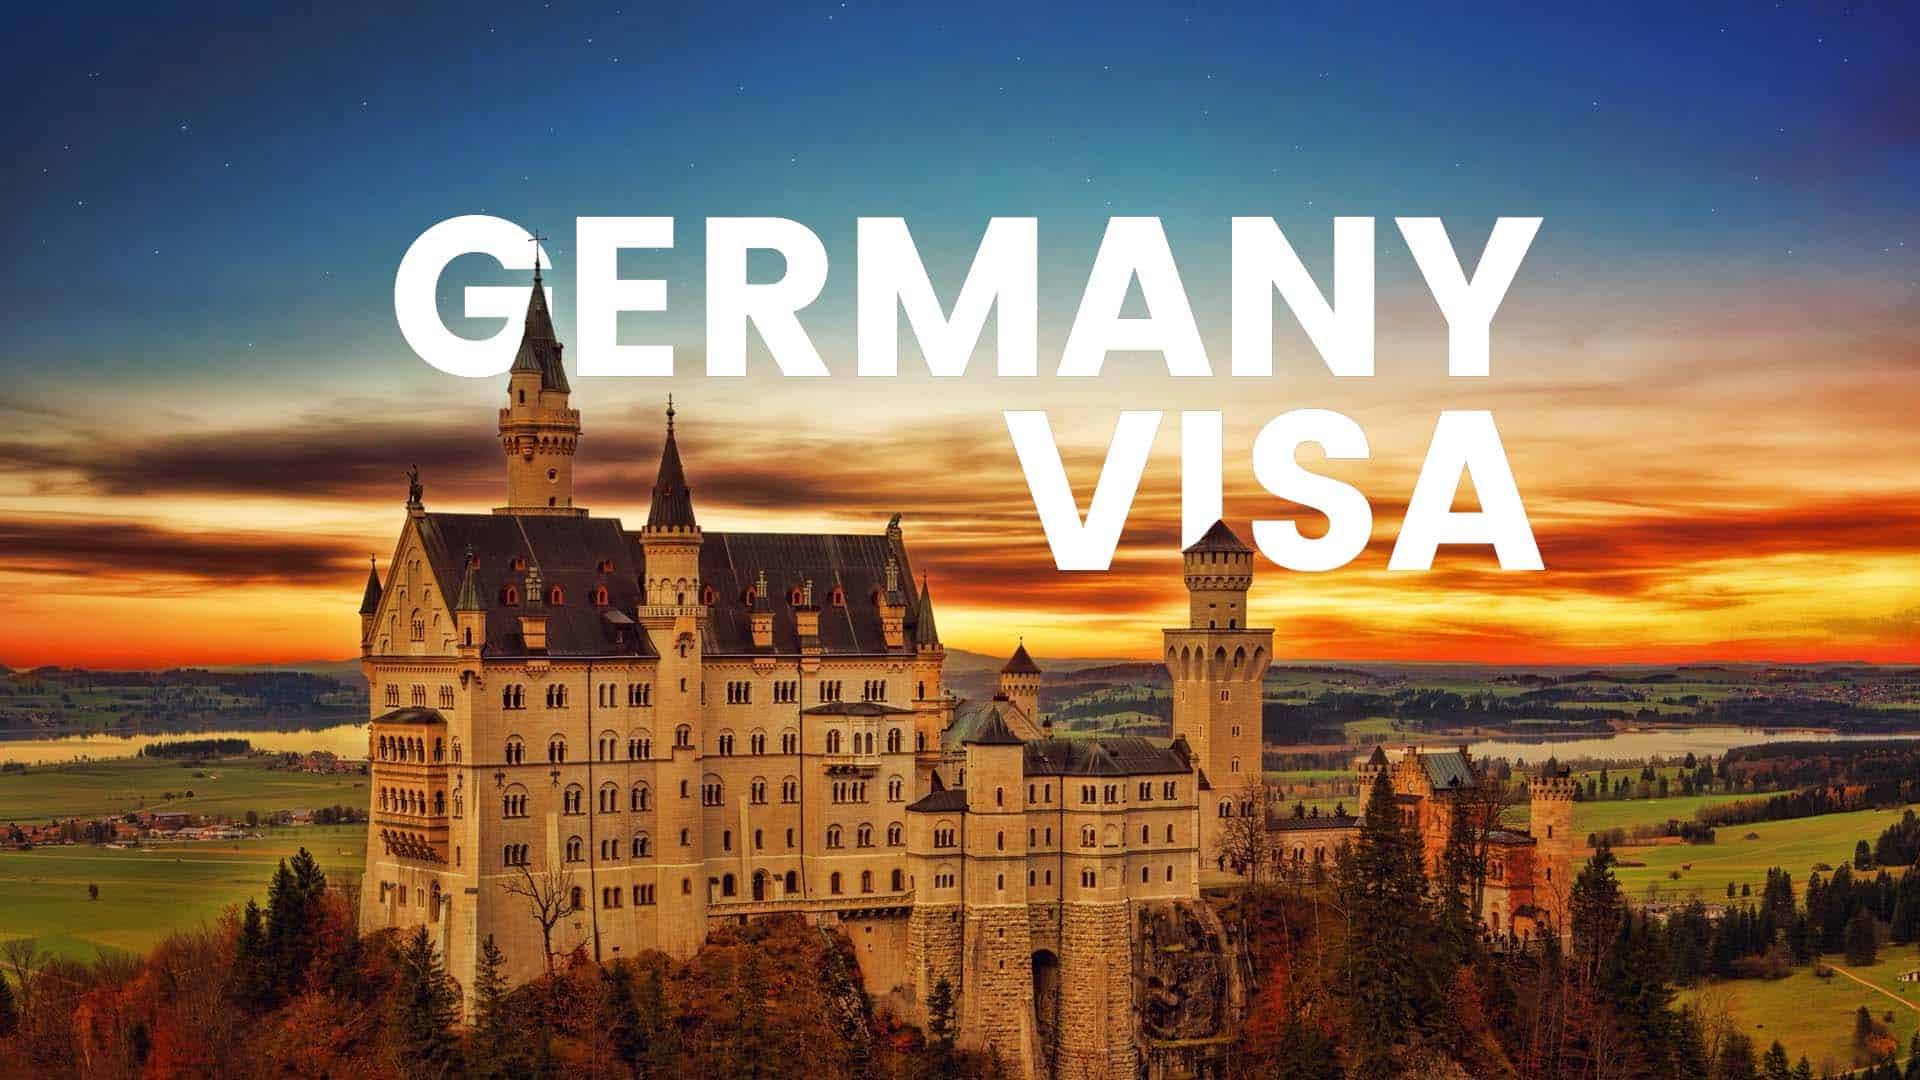 german visit visa from dubai